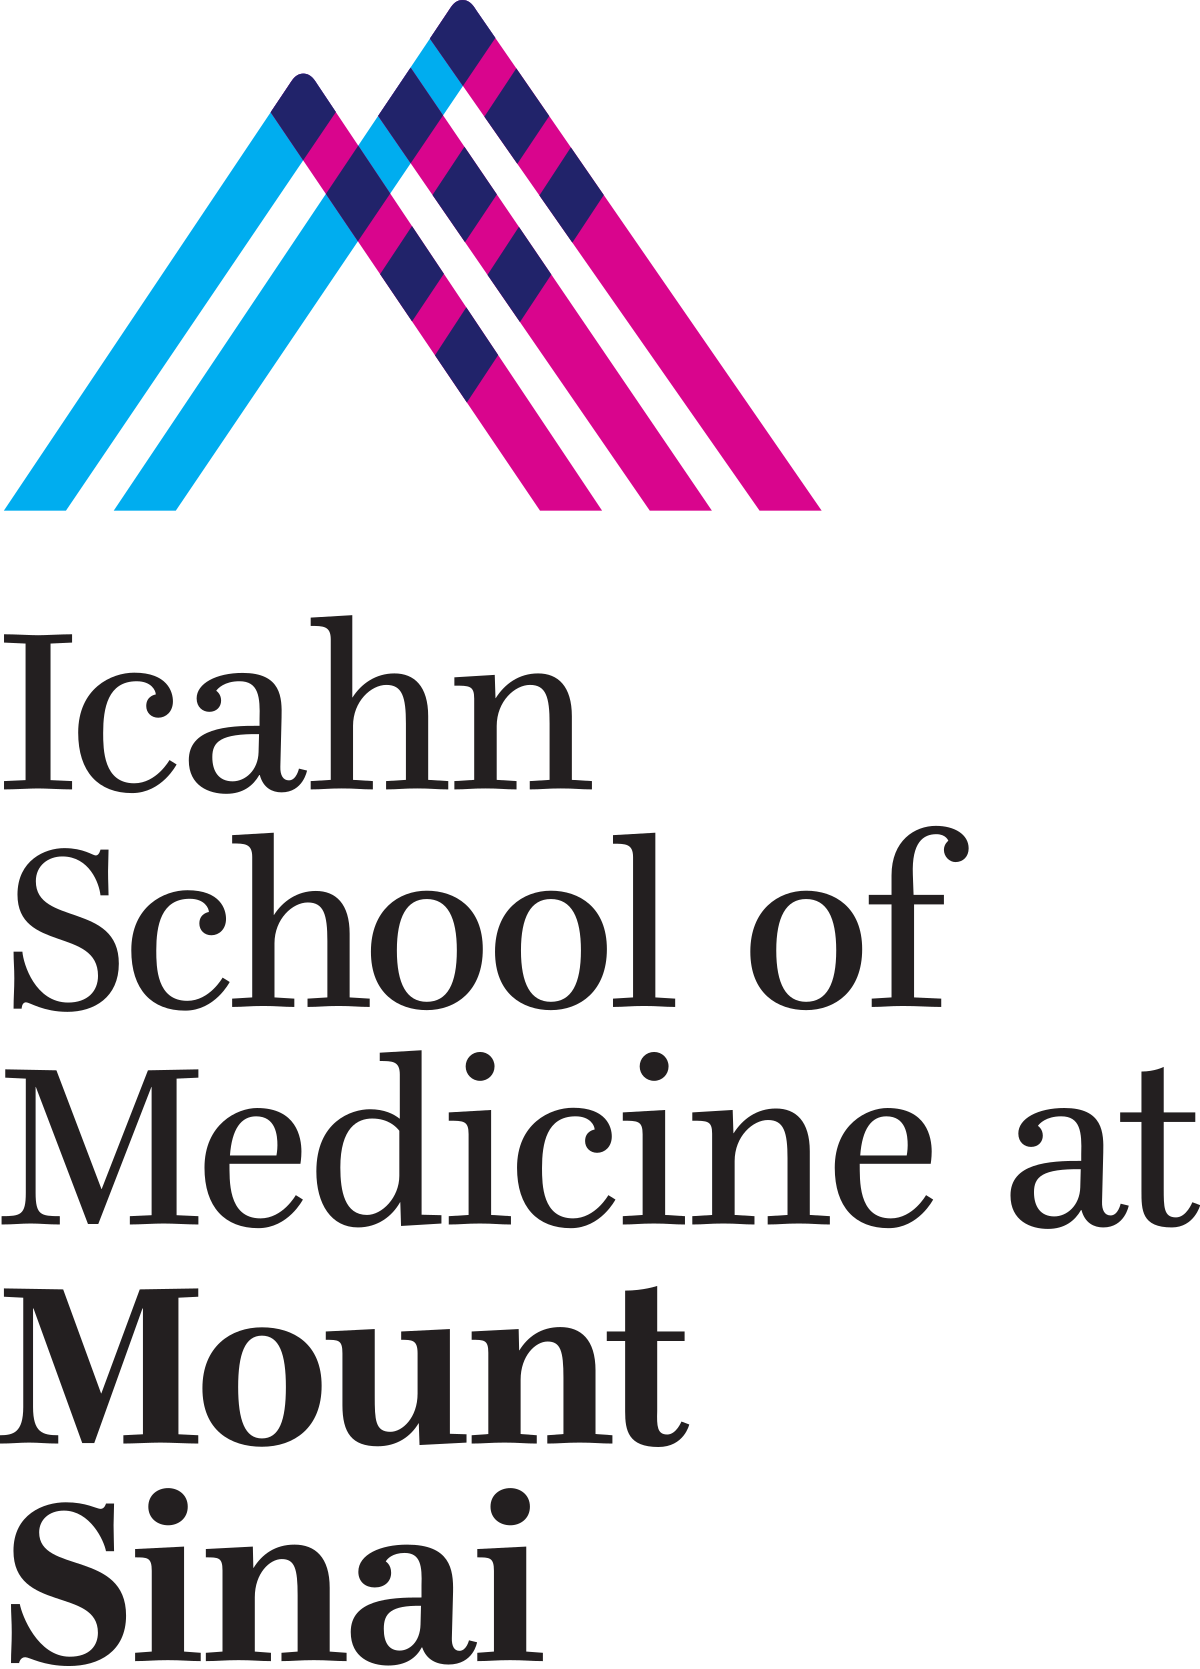 Logo de l’école de médecine Icahn au Mont Sinaï